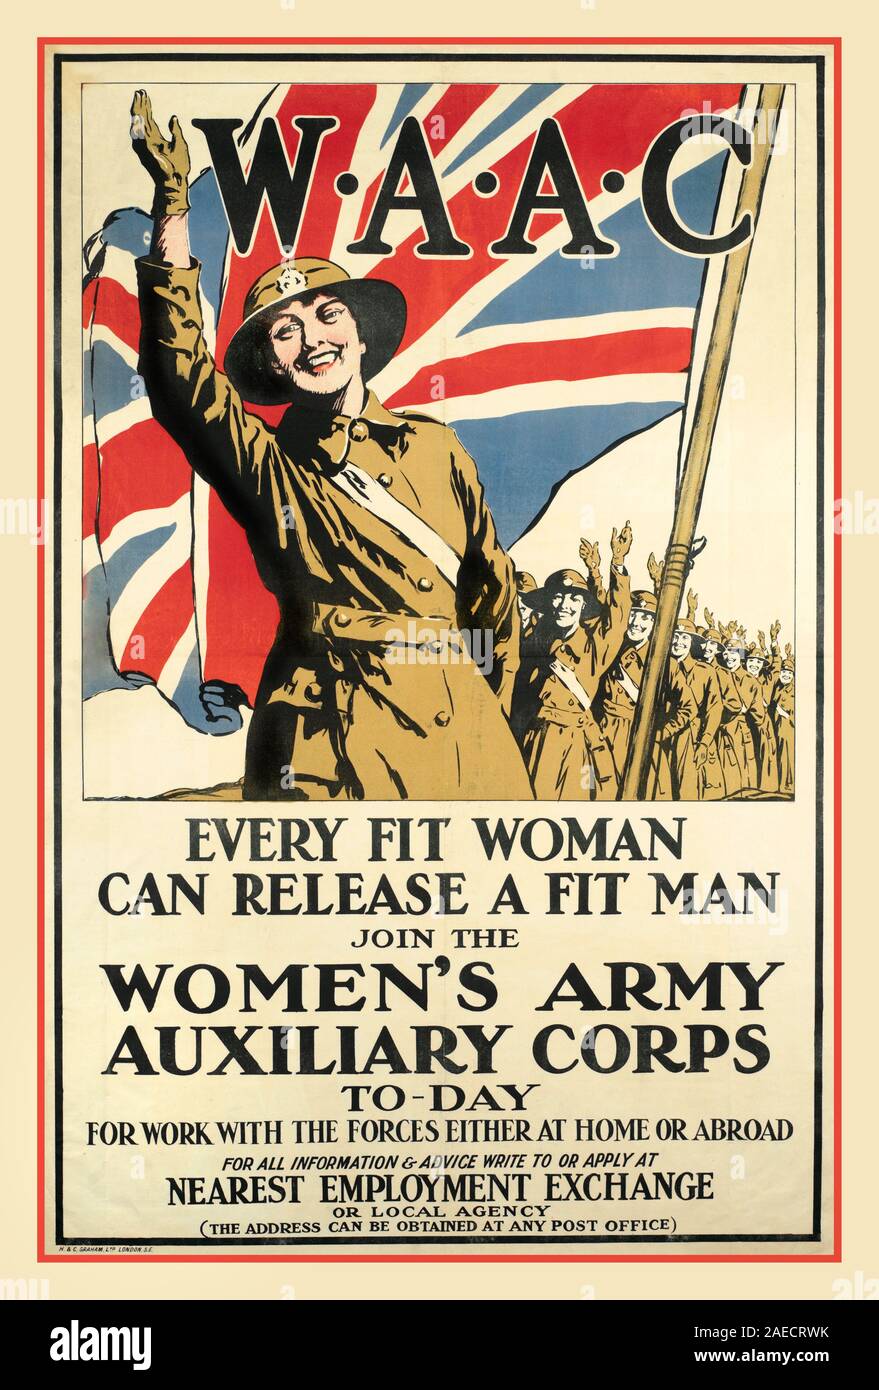 Waac Ww1 Vintage 1915 World War 1 Propaganda Woman Female Army